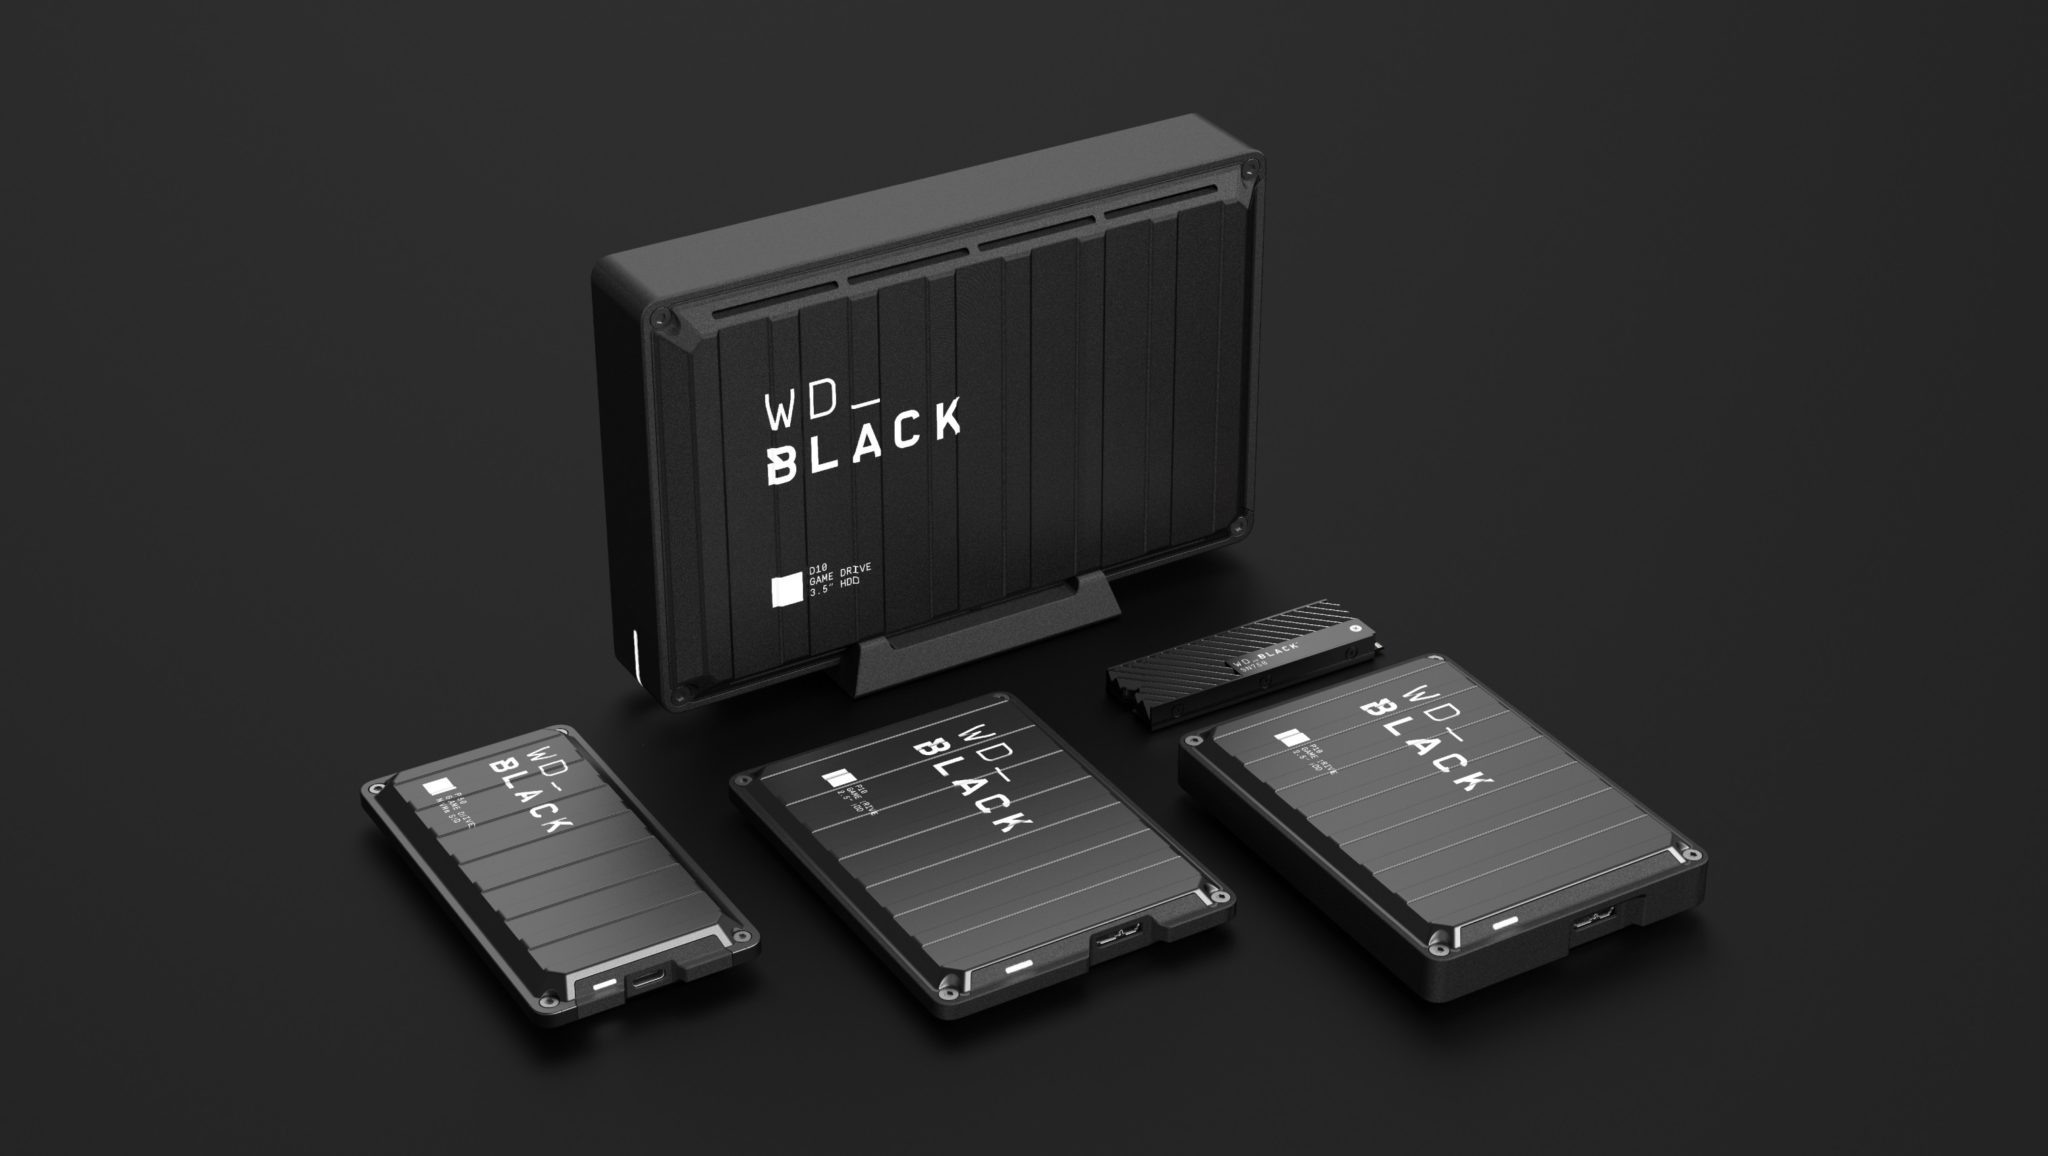 ويسترن ديجيتال تطلق مجموعة حلول التخزين WD BLACK في الشرق الأوسط